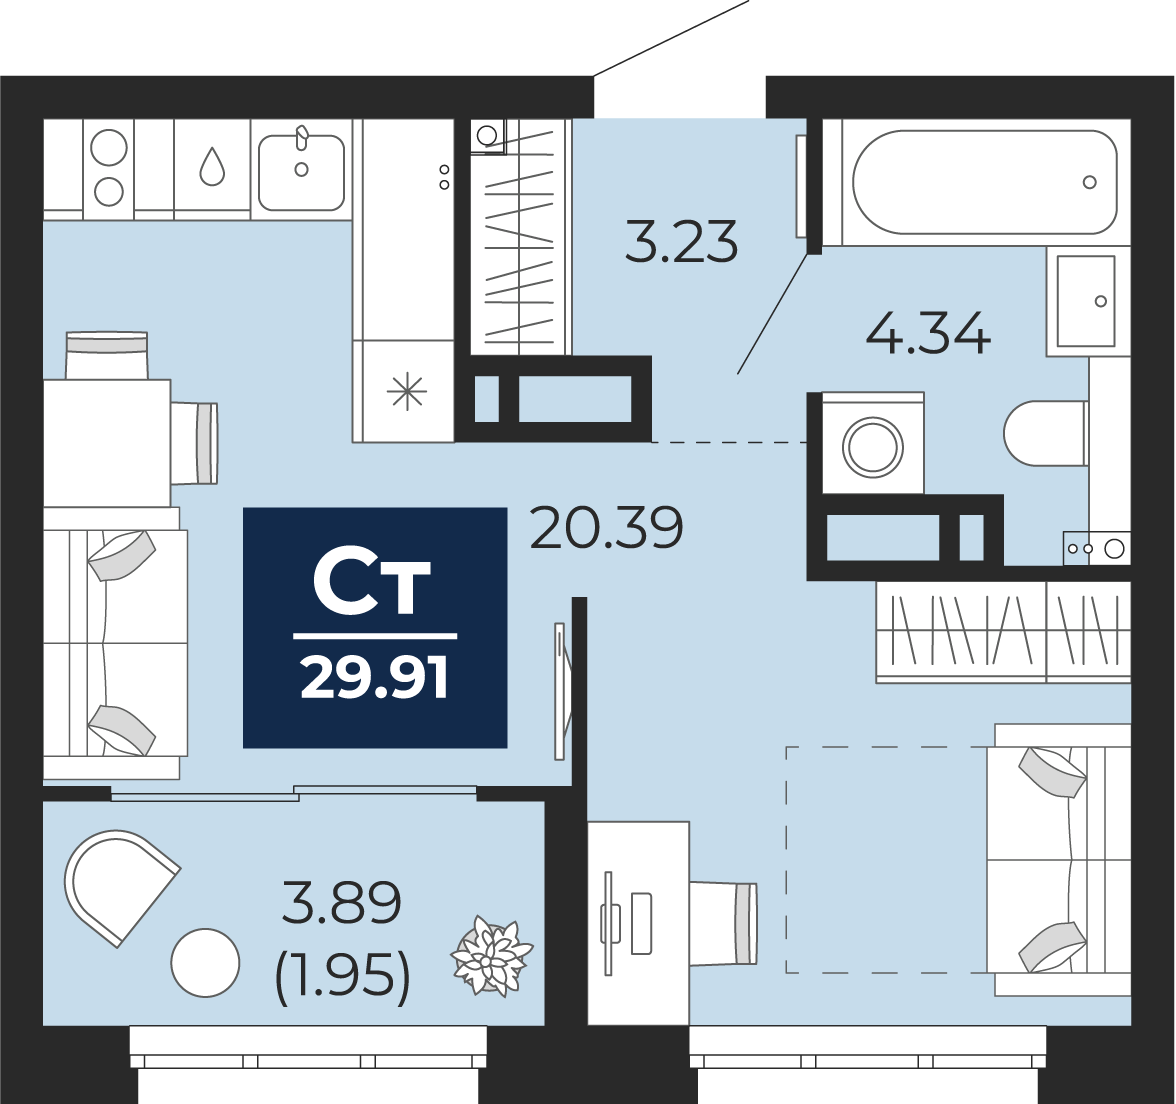 Квартира № 25, Студия, 29.91 кв. м, 6 этаж